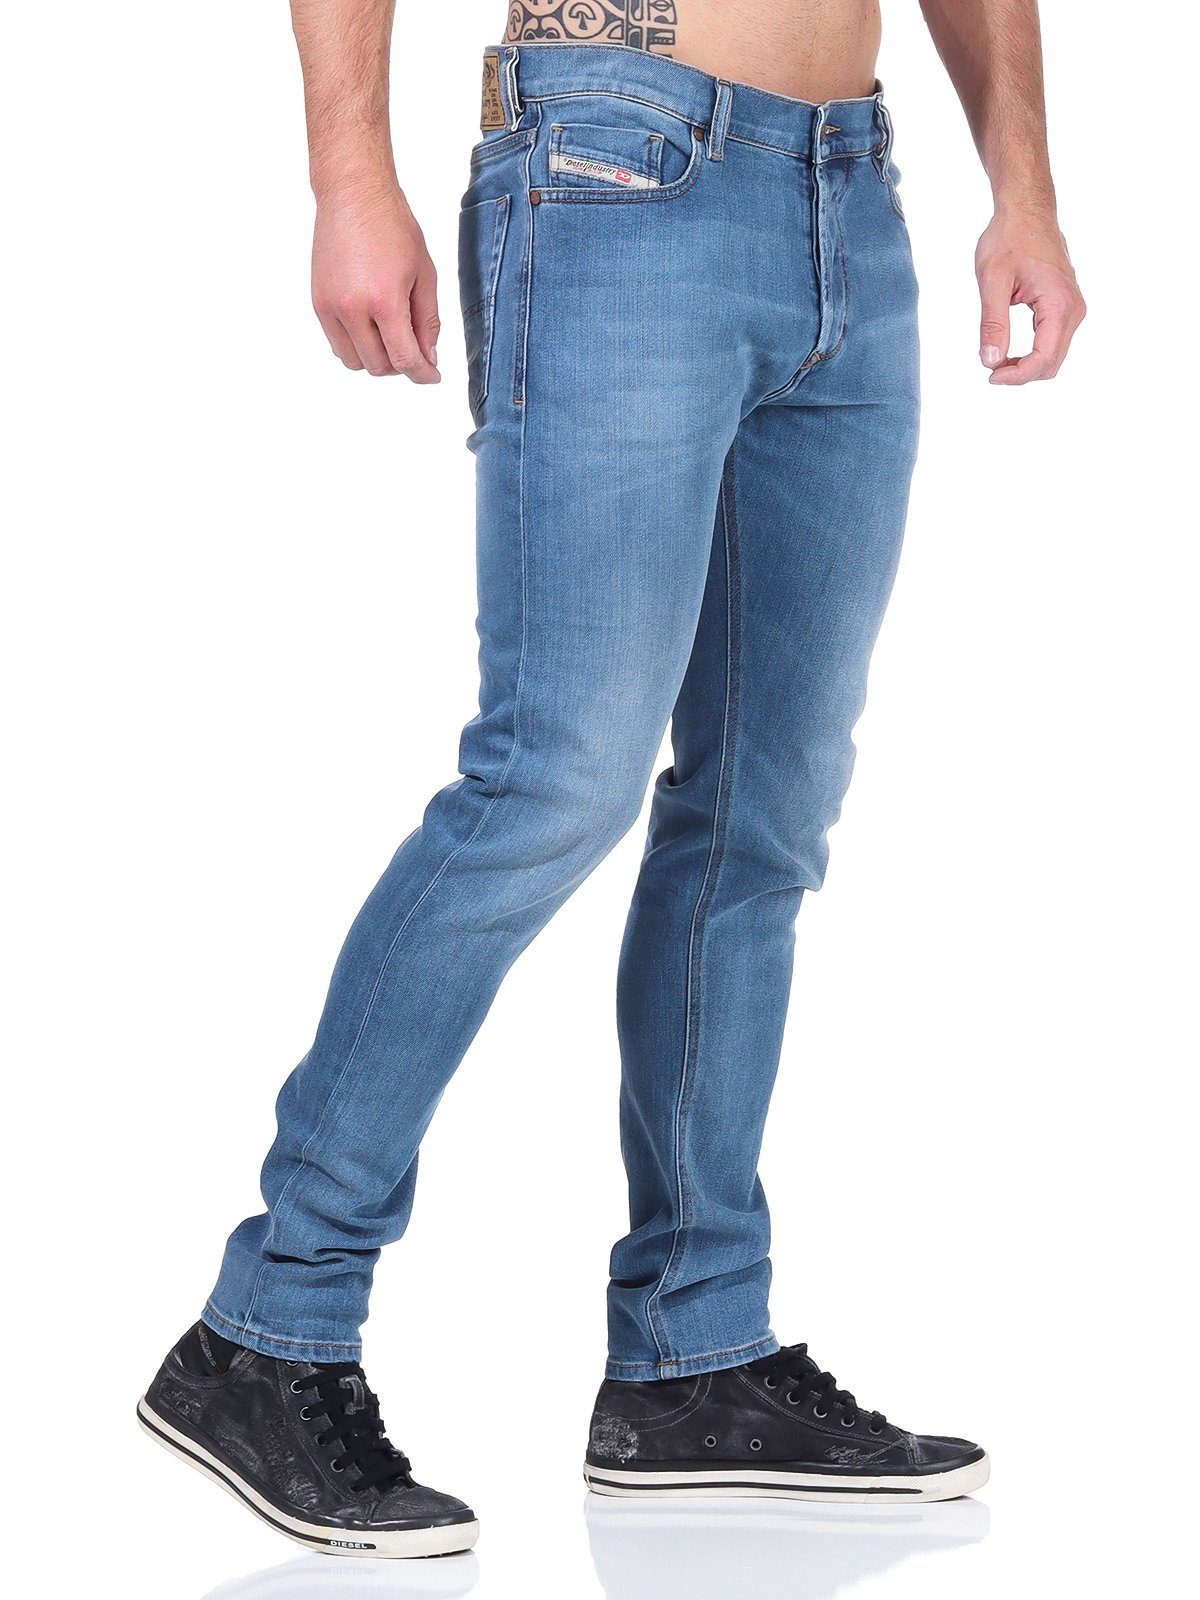 R8XA3 Blau, Slim-fit-Jeans Stretch, Diesel Röhrenjeans, Used-Look Tepphar-X 5-Pocket-Style, Herren